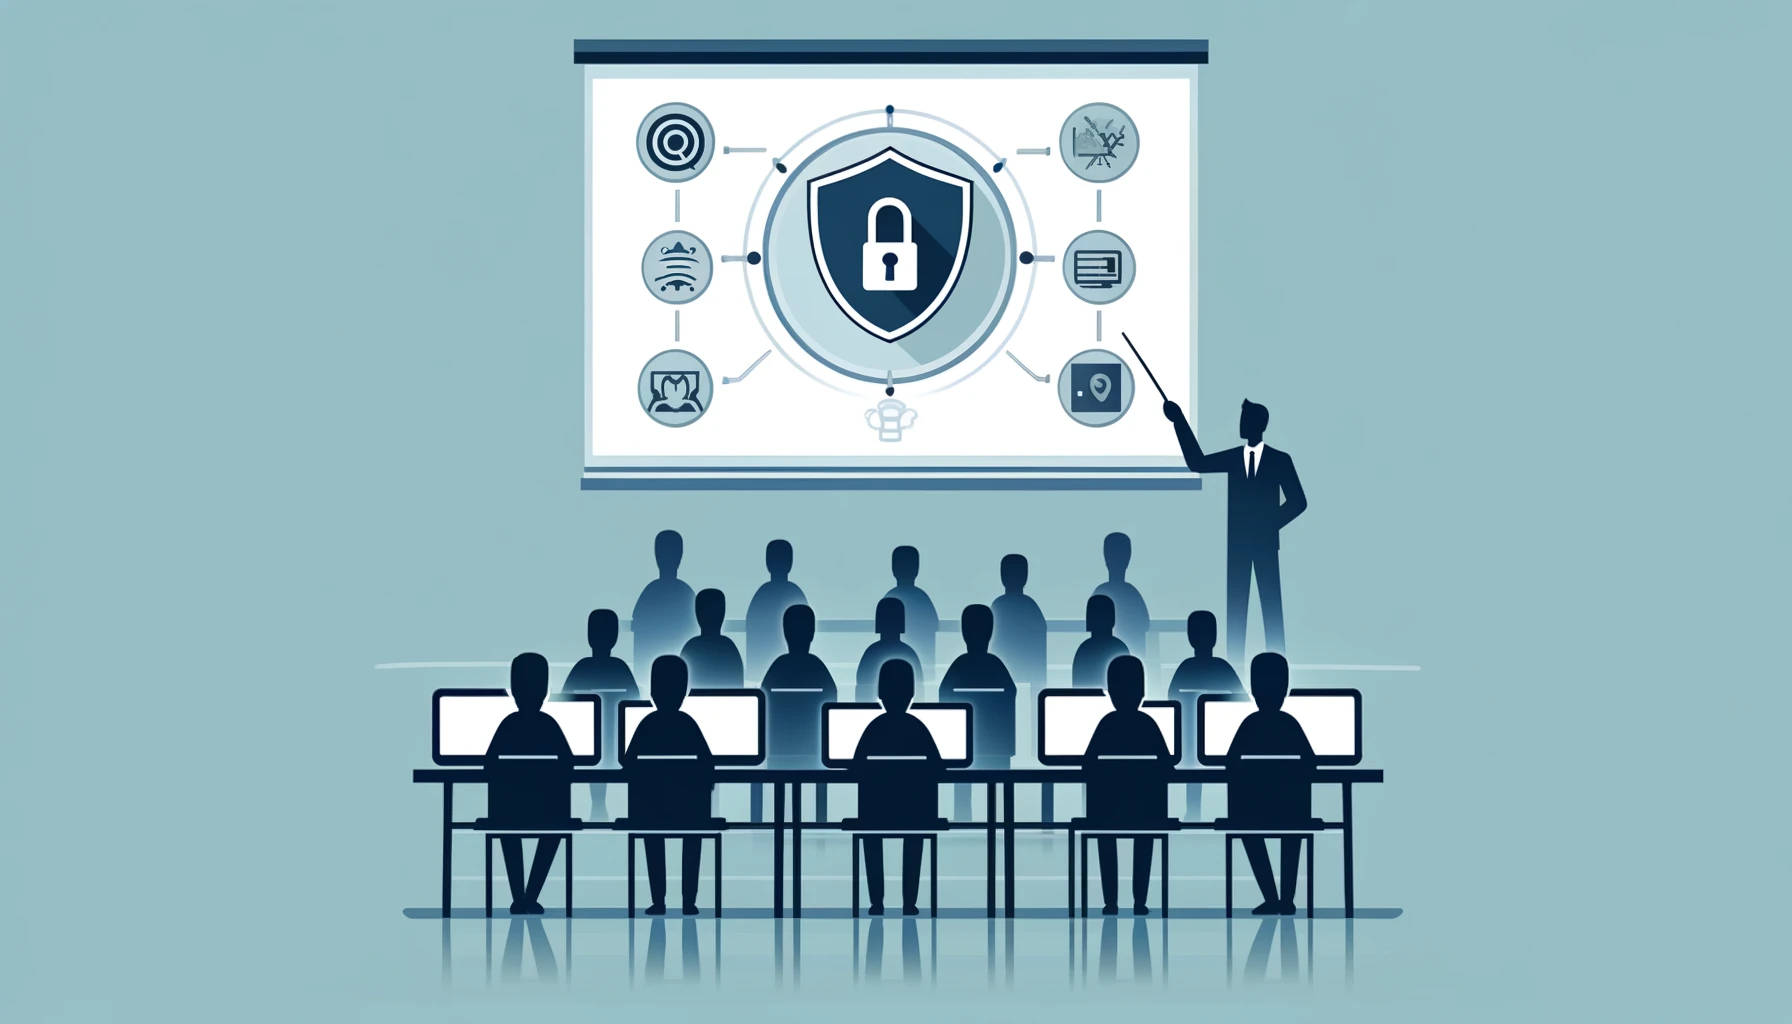 Abbildung zeigt einen Schulungsraum mit Personen, die an einer Cyber Security Schulung teilnehmen.